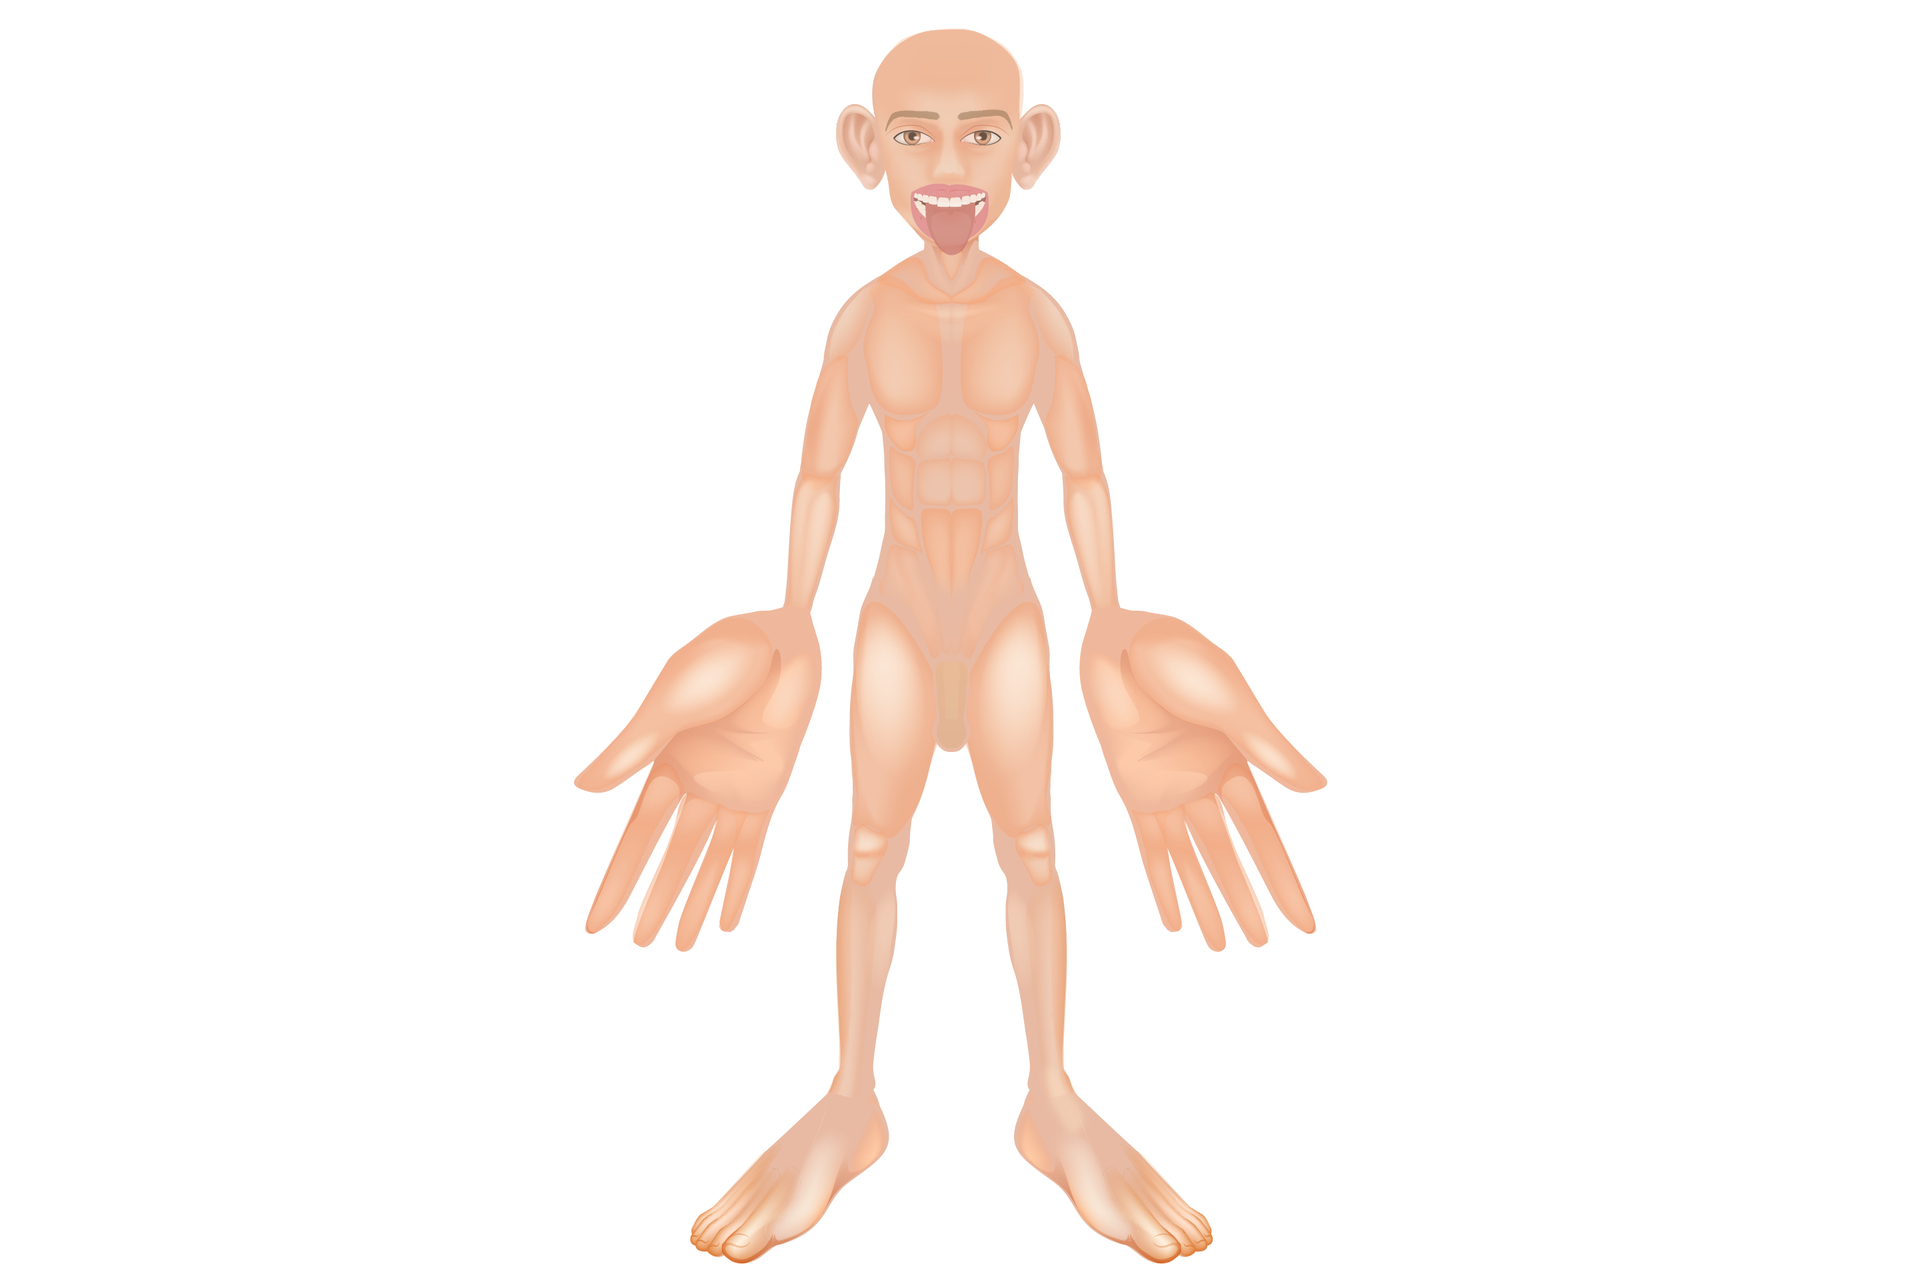 Ilustracja prezentuje wizerunek człowieka z powiększonymi częściami ciała, gdzie zmysł dotyku jest najbardziej czuły, czyli uszy, język, dłonie, stopy